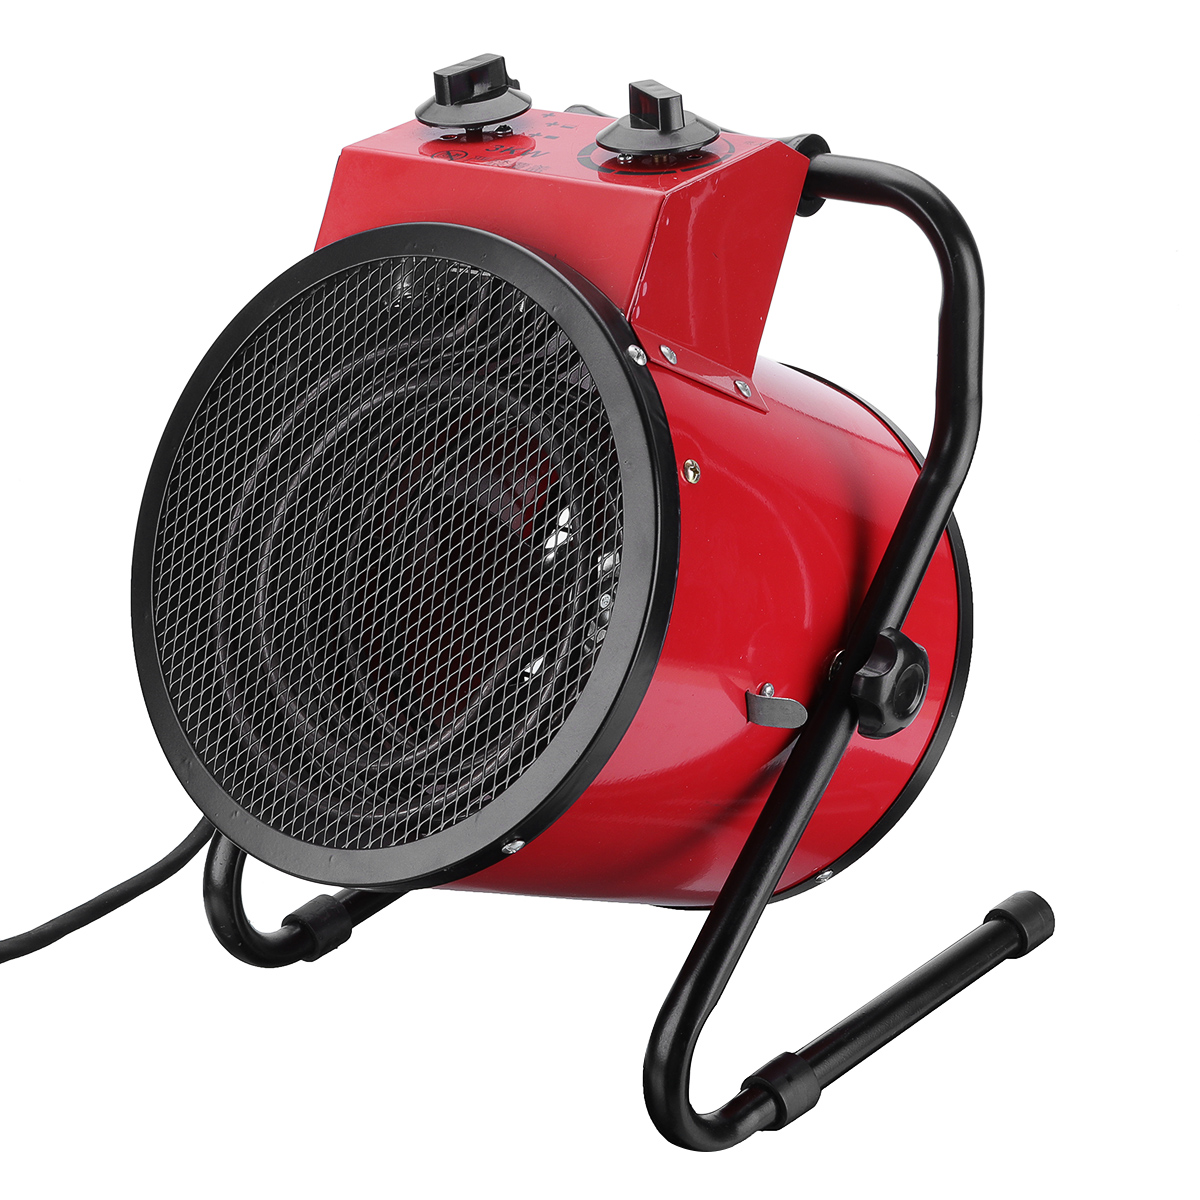 

3KW 220V Портативный электрический теплый вентилятор Нагреватель Промышленный салон Мастерская Гараж